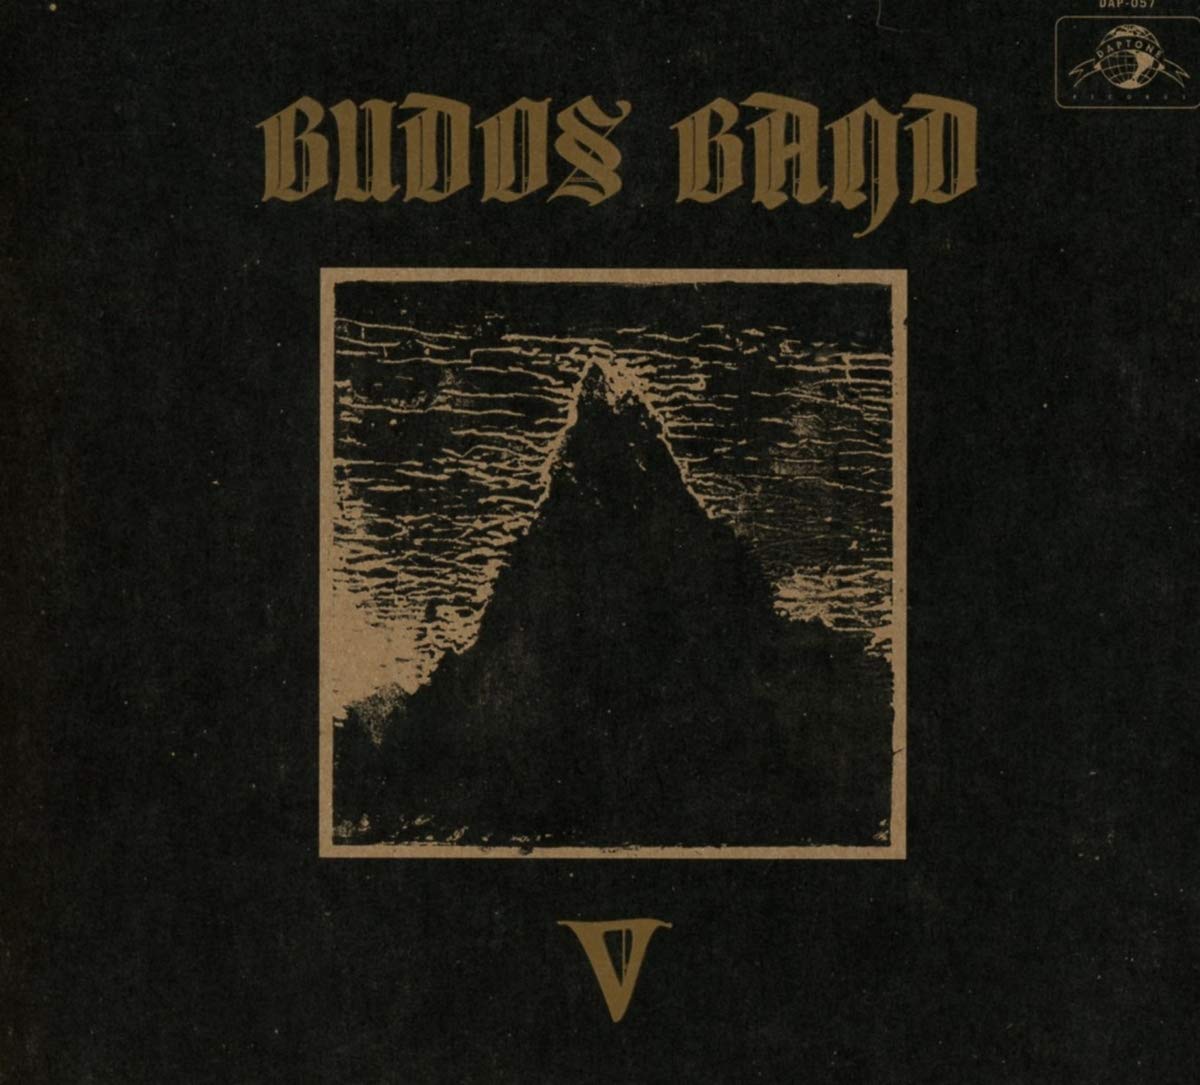 The Budos Band-V-(DAP-057)-CD-FLAC-2019-HOUND